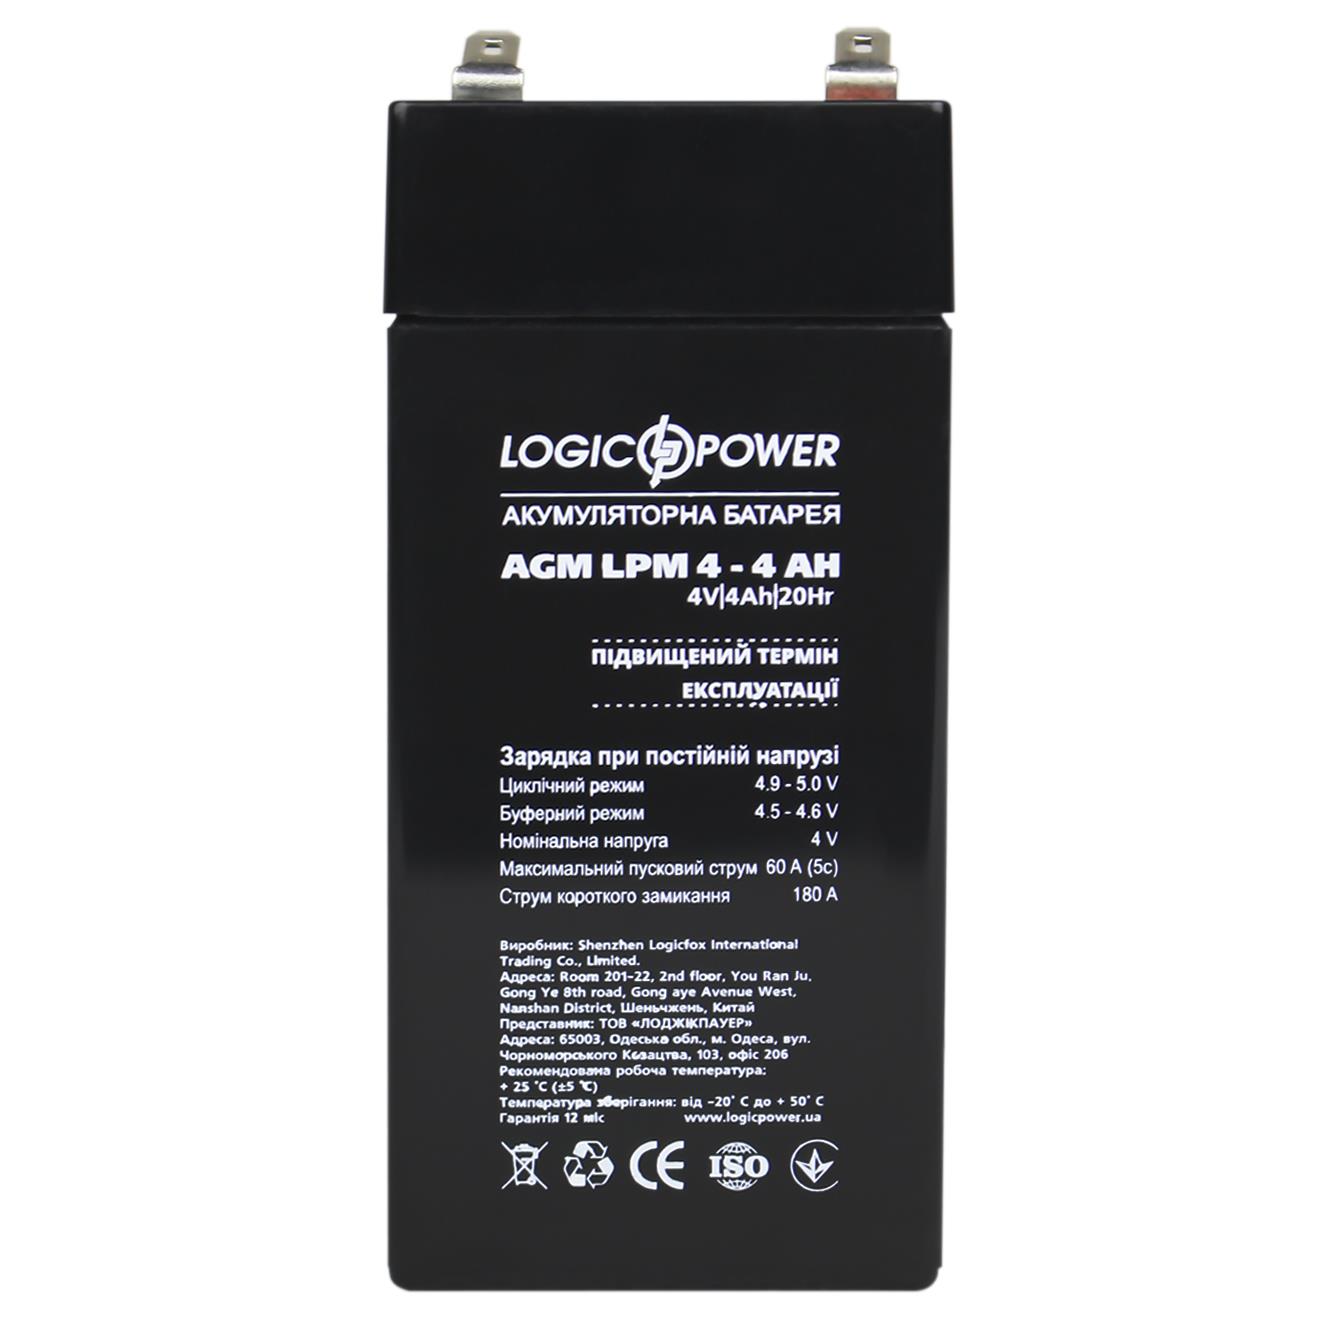 продаём LogicPower AGM LPM 4V - 4 Ah (4135) в Украине - фото 4